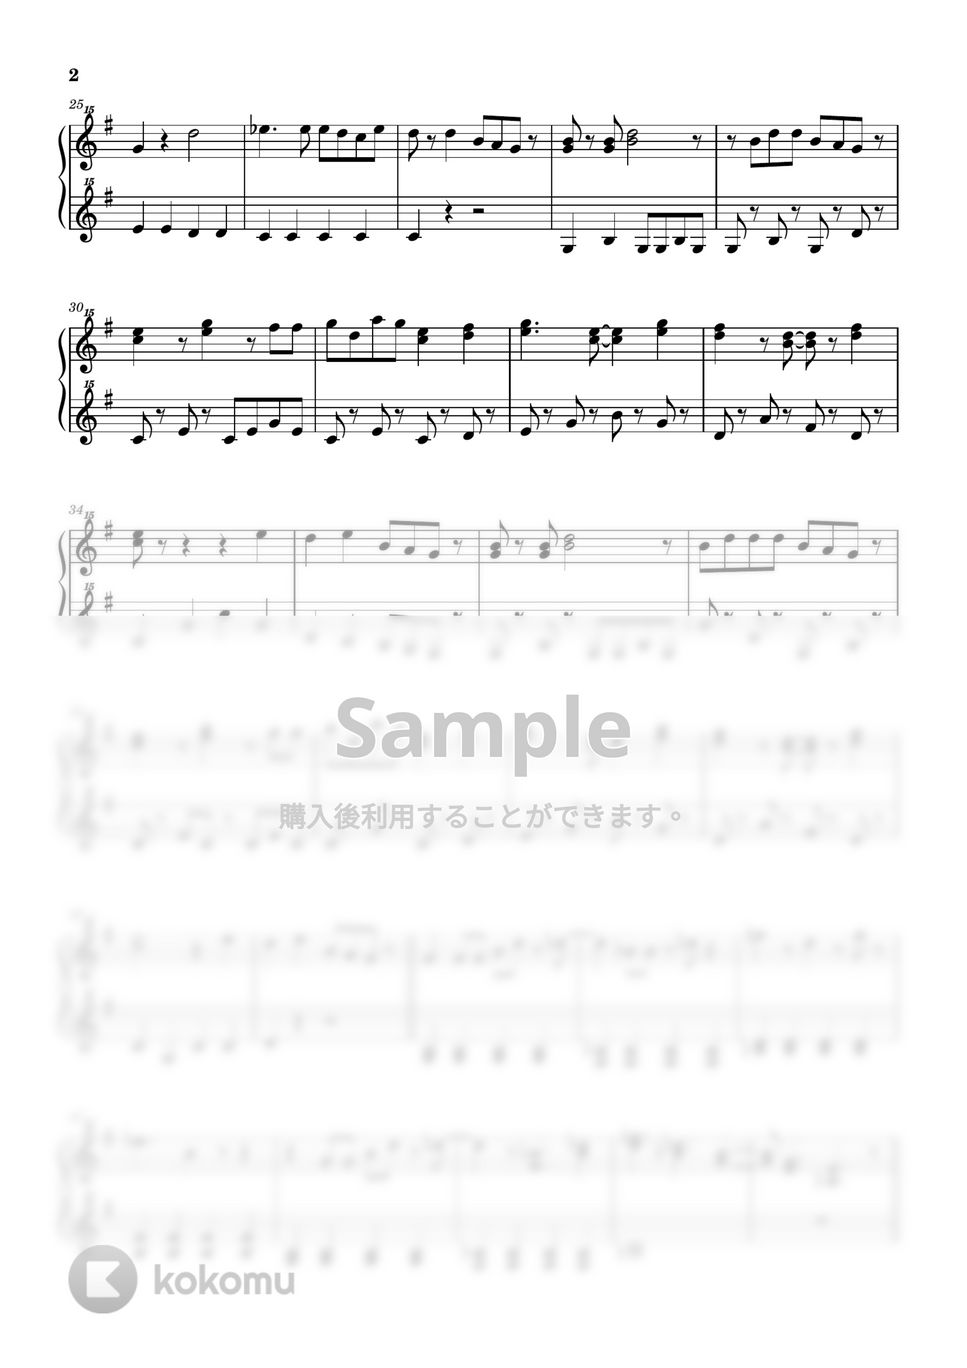 田中’Ｔ’幸彦 - そらのライオン (トイピアノ / 32鍵盤 / シナぷしゅ) by 川西三裕